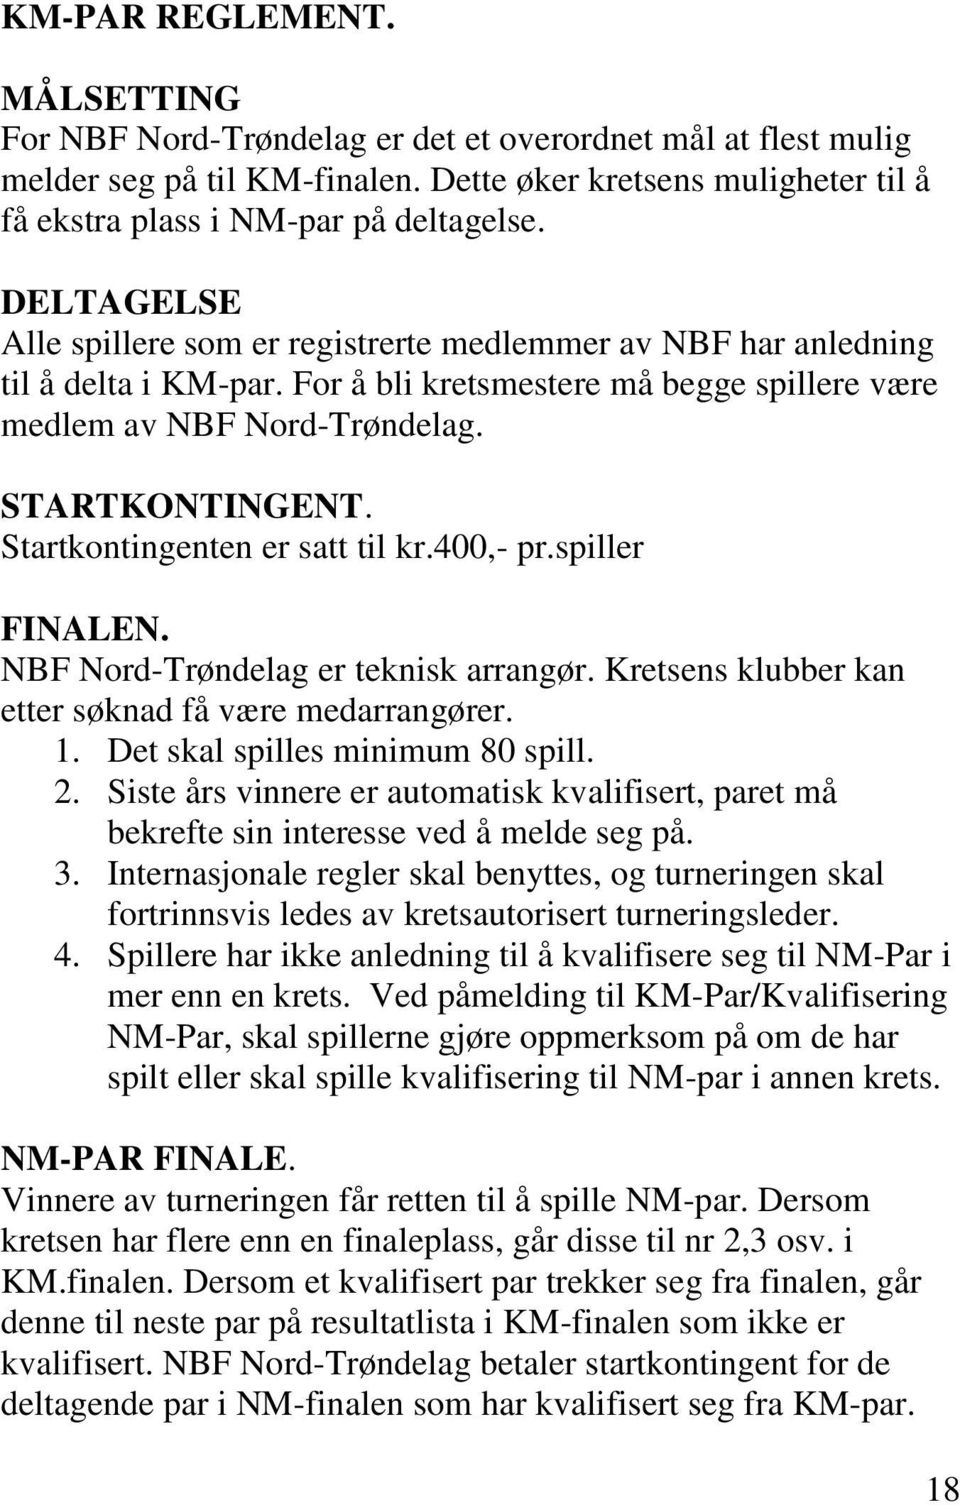 Startkontingenten er satt til kr.400,- pr.spiller FINALEN. NBF Nord-Trøndelag er teknisk arrangør. Kretsens klubber kan etter søknad få være medarrangører. 1. Det skal spilles minimum 80 spill. 2.